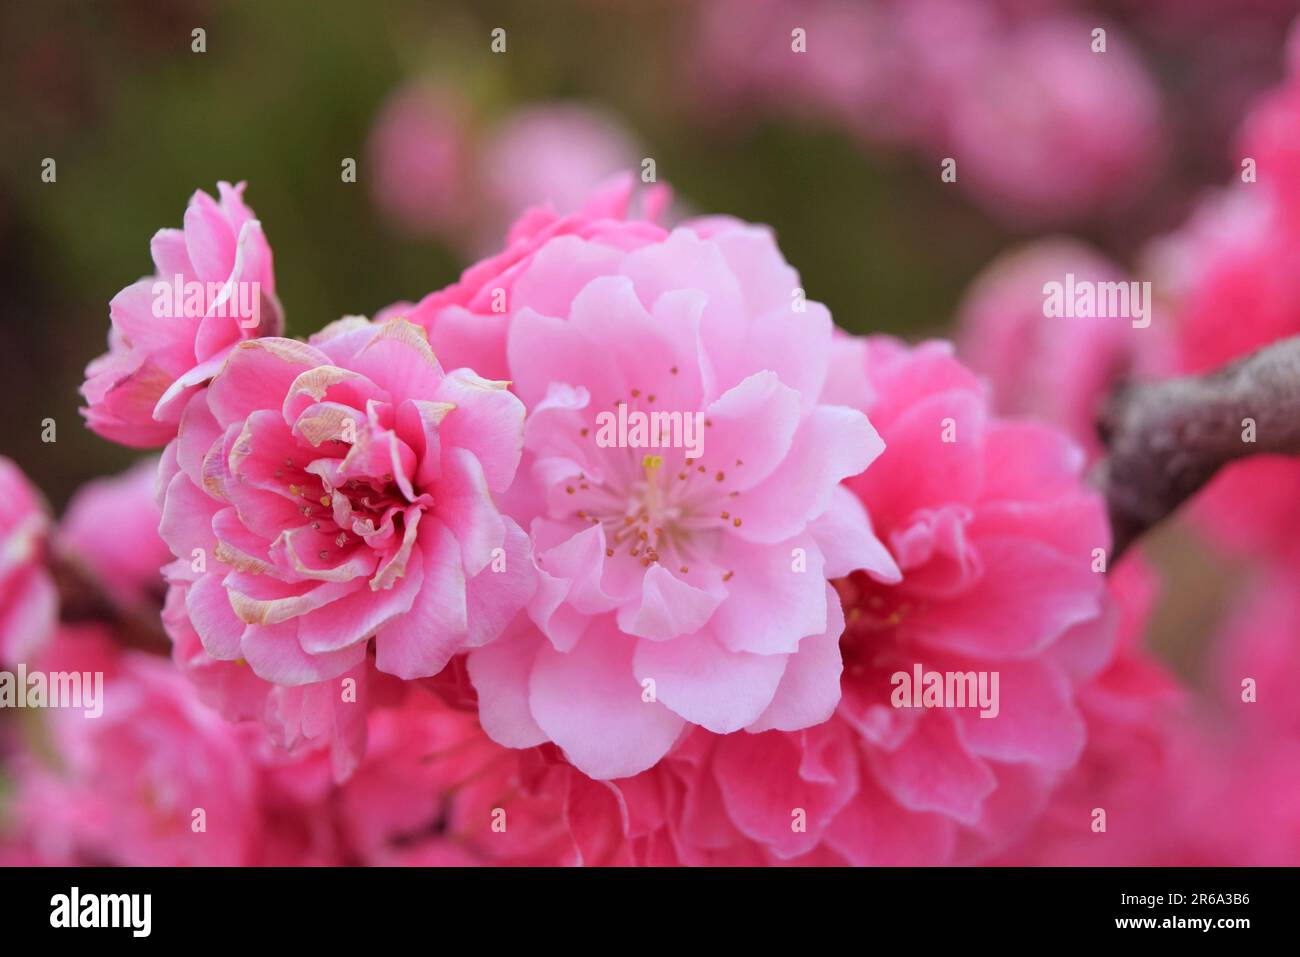 Abbracciate la serenità della natura con questa incantevole foto di fiori rosa. La luce solare soffusa bagna delicati fiori, evocando tranquillità e colori vivaci. Foto Stock